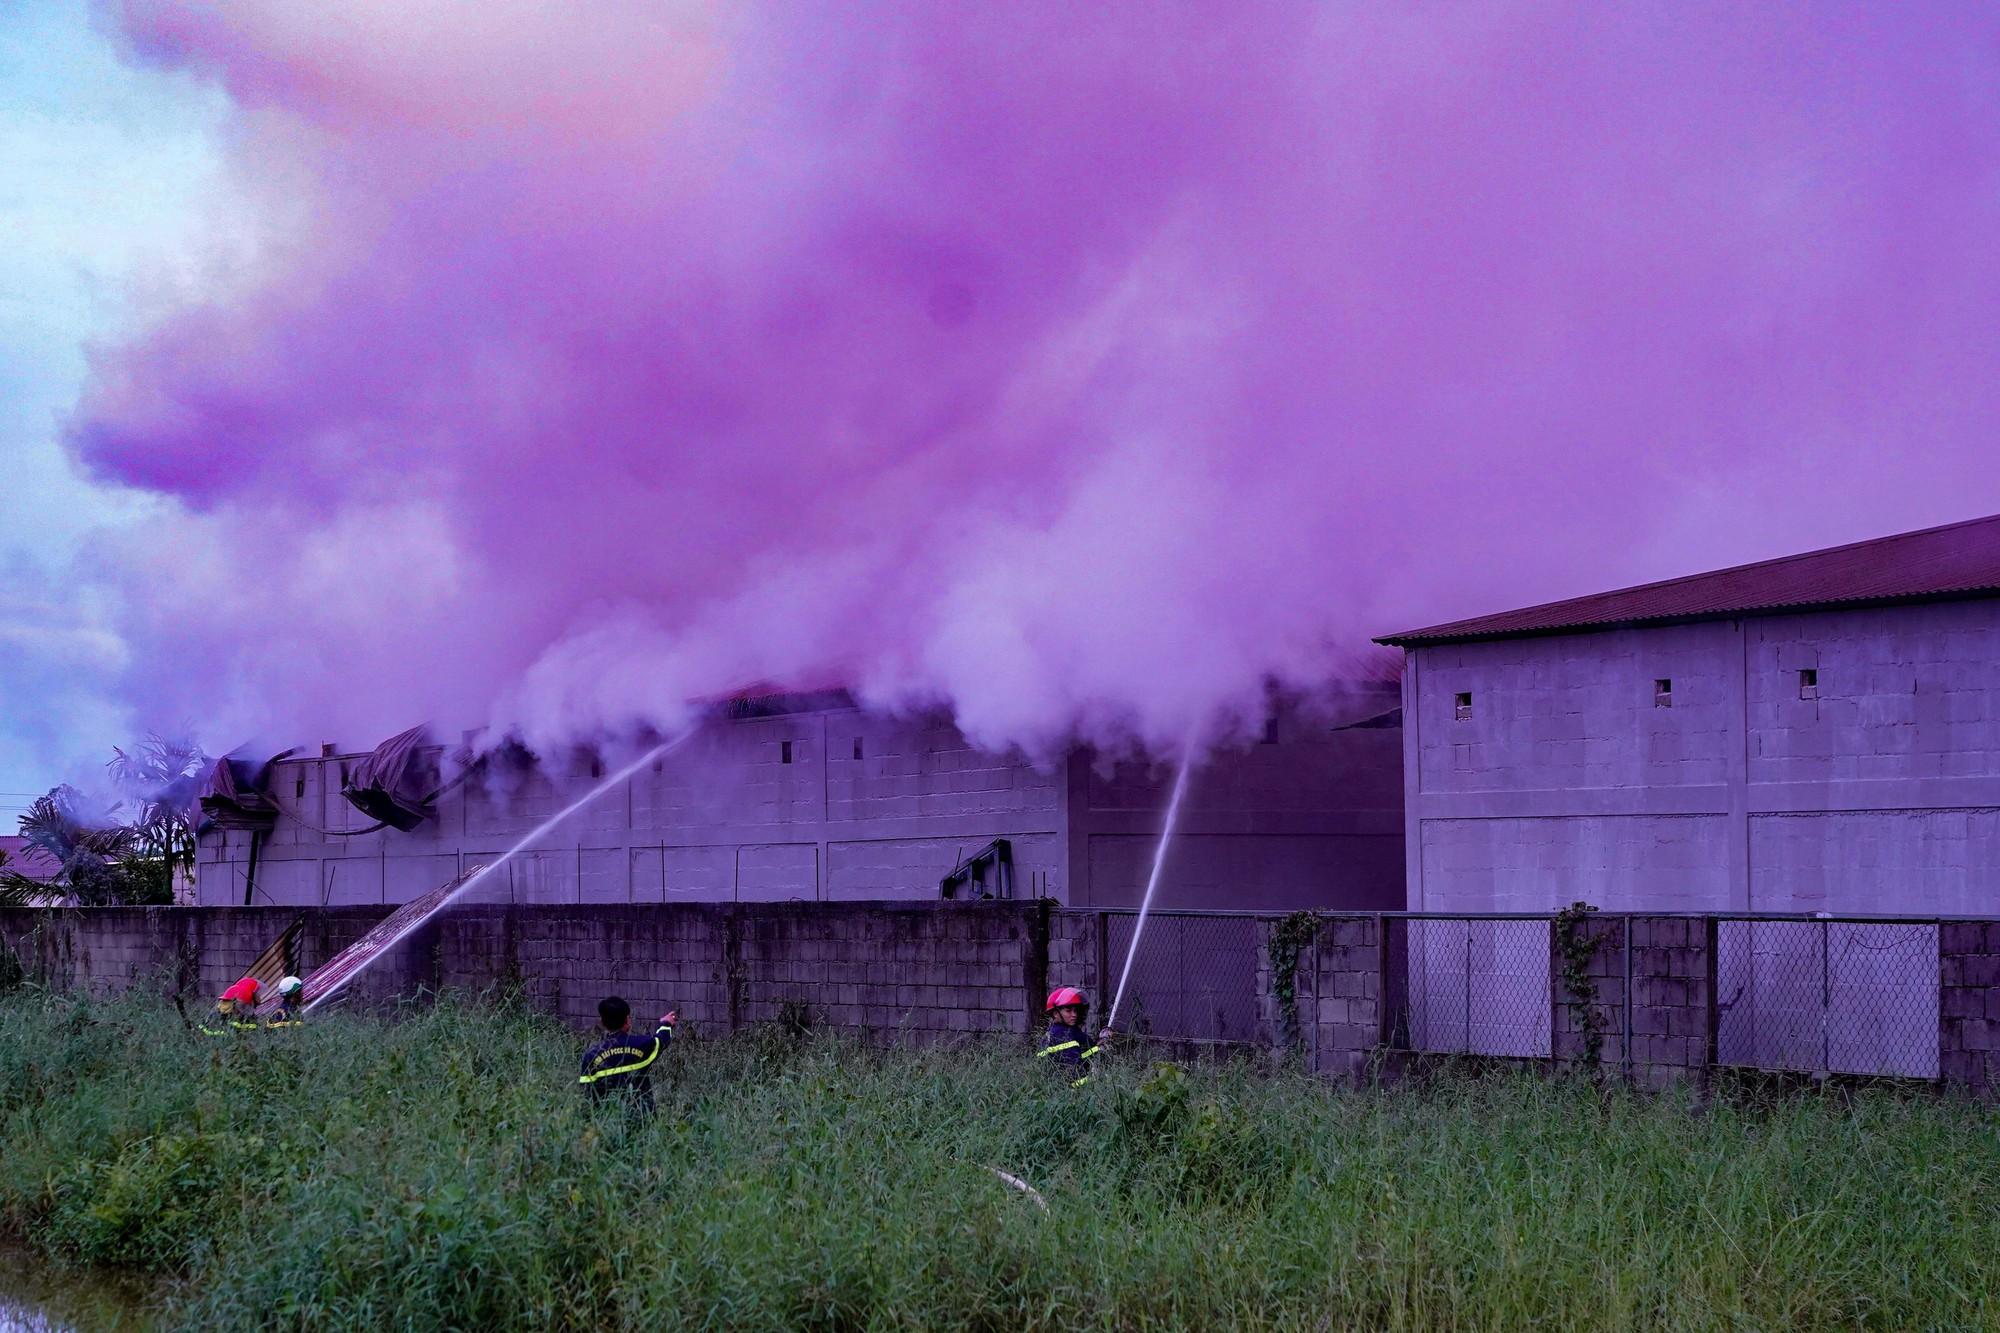 Nổ lớn, cột khói đen bốc lên tại kho chứa vật tư nuôi trồng thủy sản ở Cà Mau - Ảnh 1.